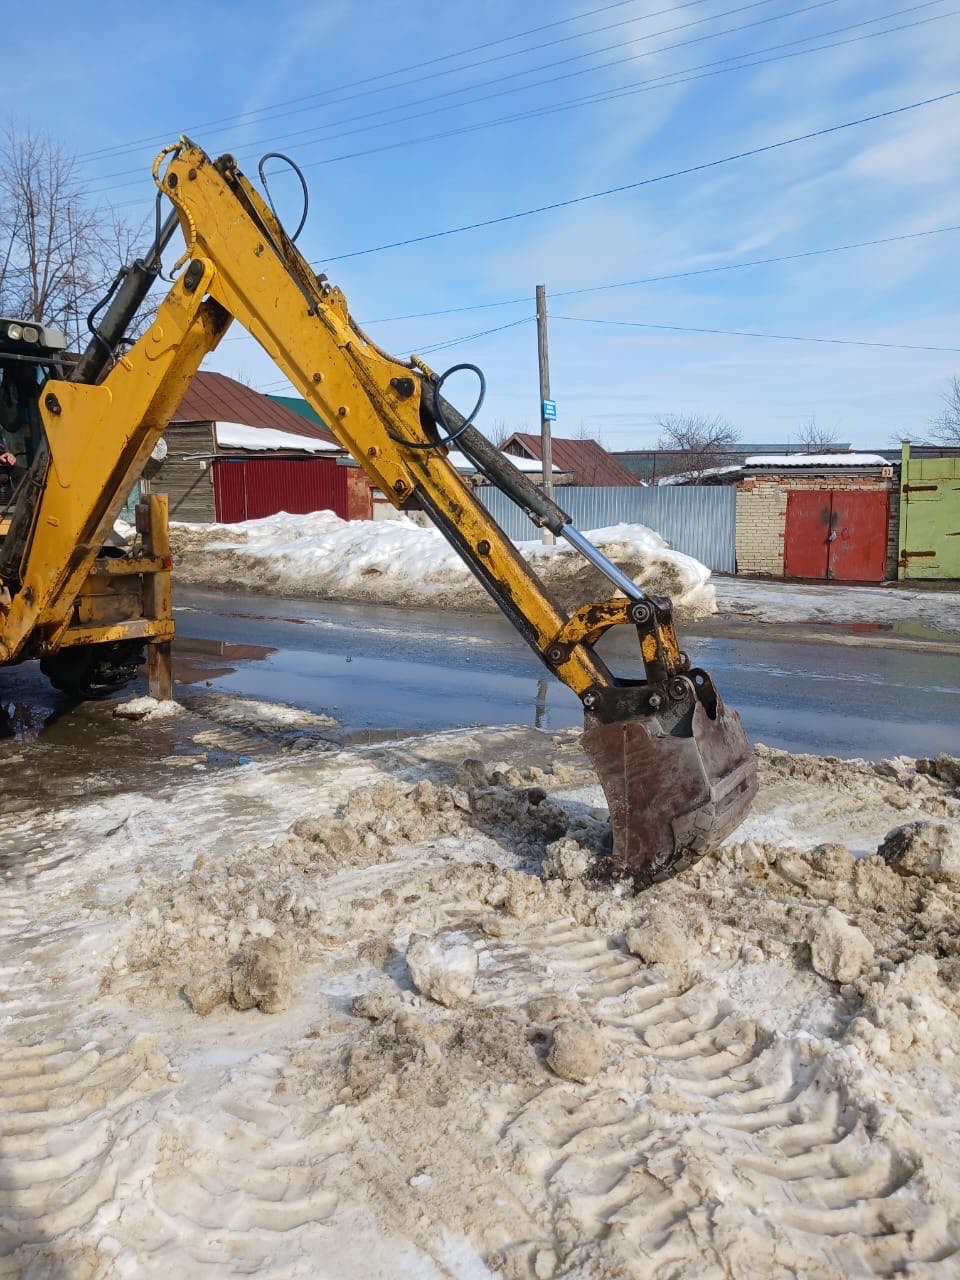 В Кузнецке продолжаются работы по благоустройству  города и содержанию дорог